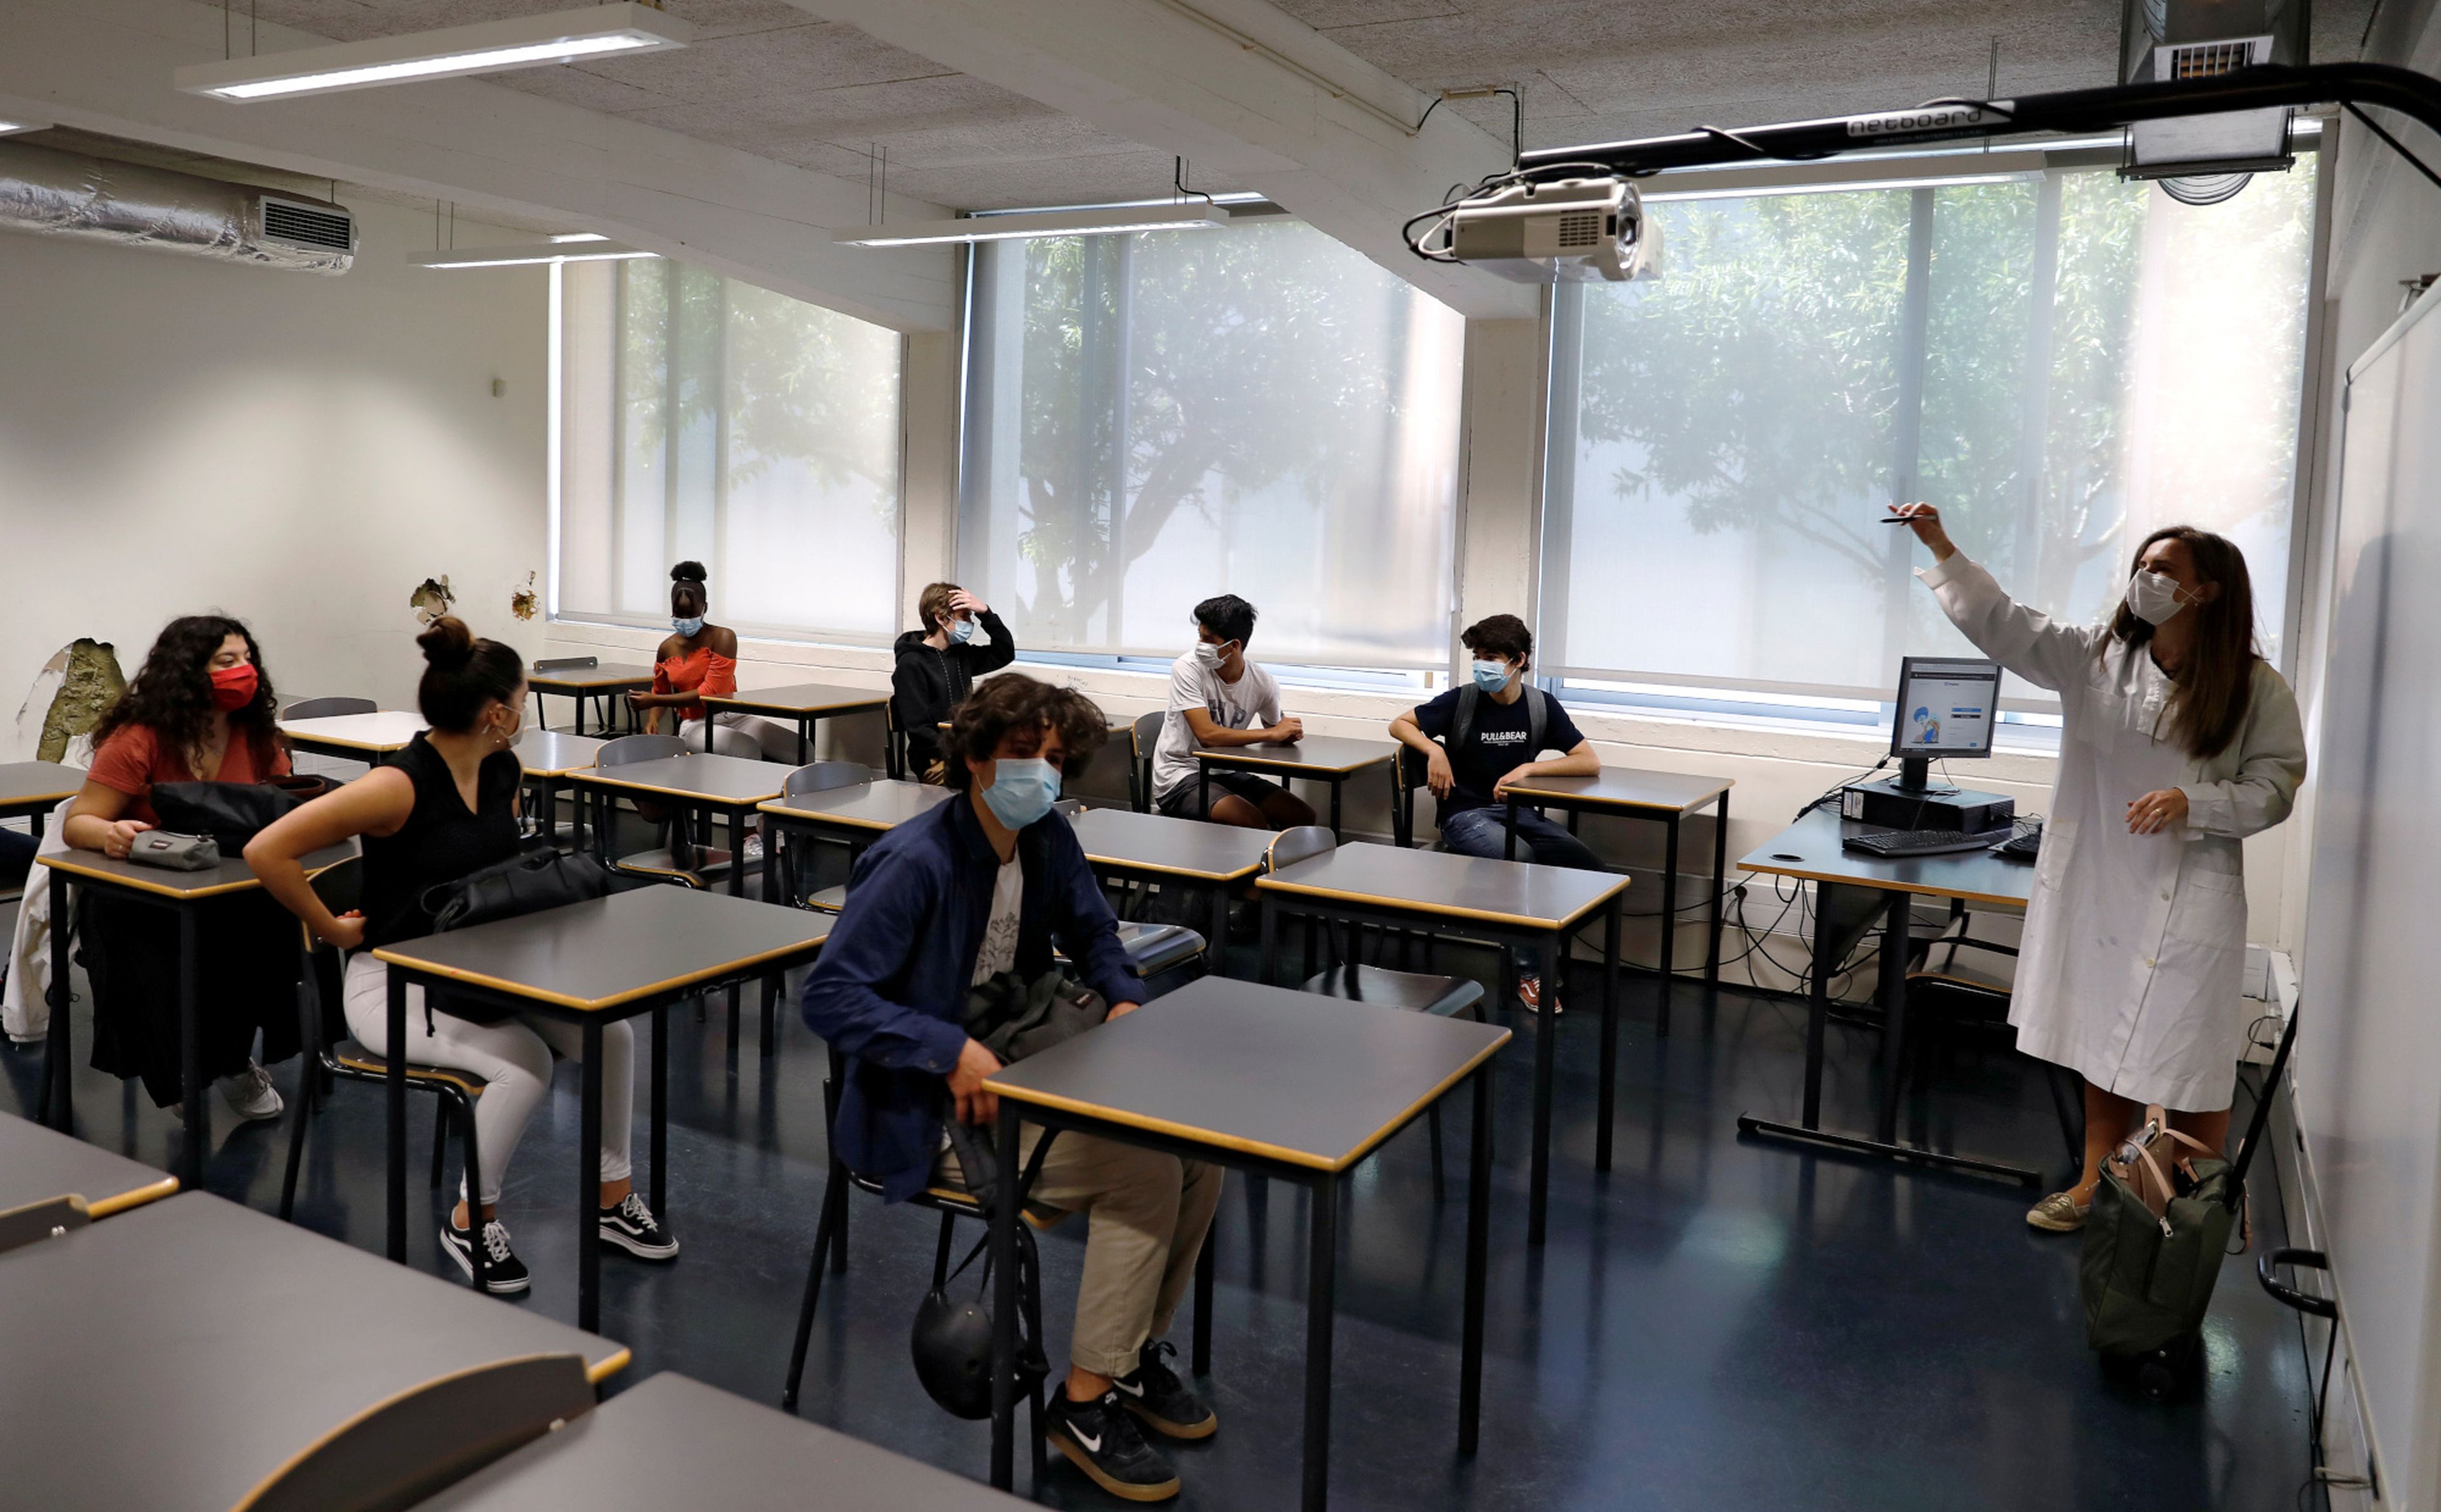 Estudiantes de secundaria en clase durante el brote de coronavirus (COVID-19), en Lisboa, Portugal, el 18 de mayo de 2020.